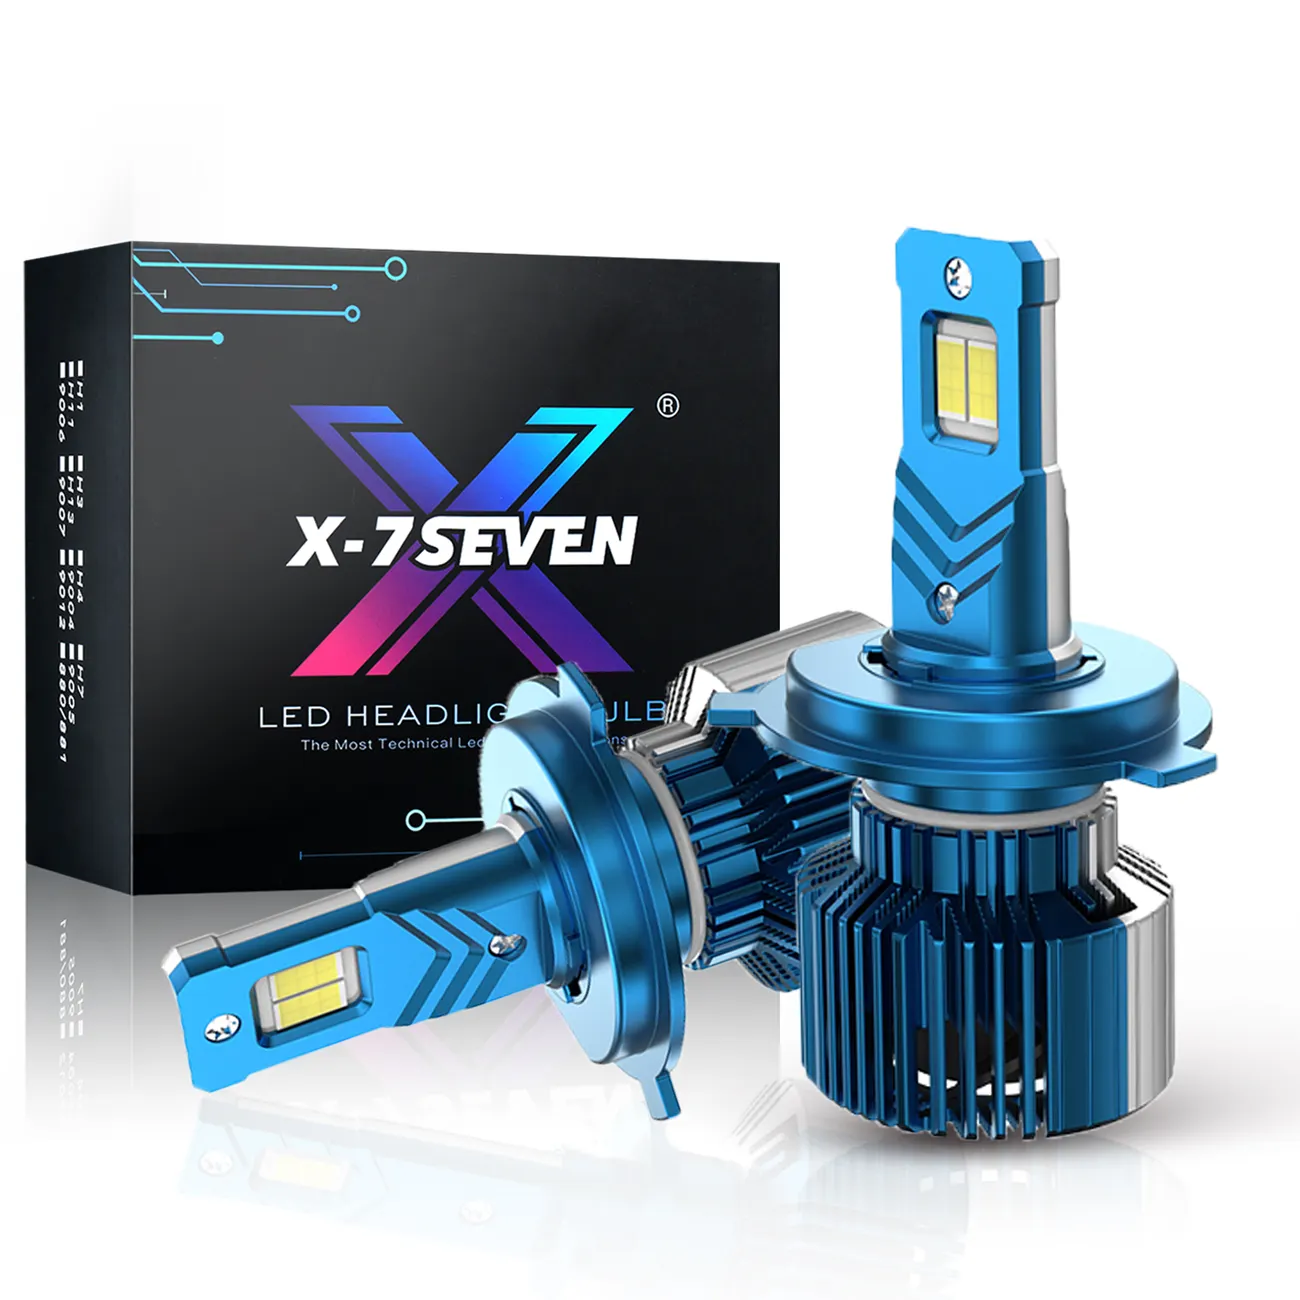 X-7SEVEN Super luminoso faro LED OEM all'ingrosso H1 H3 H7 H11 H13 9005 9006 9007 bulit-in ventola di raffreddamento sistema di illuminazione automatica